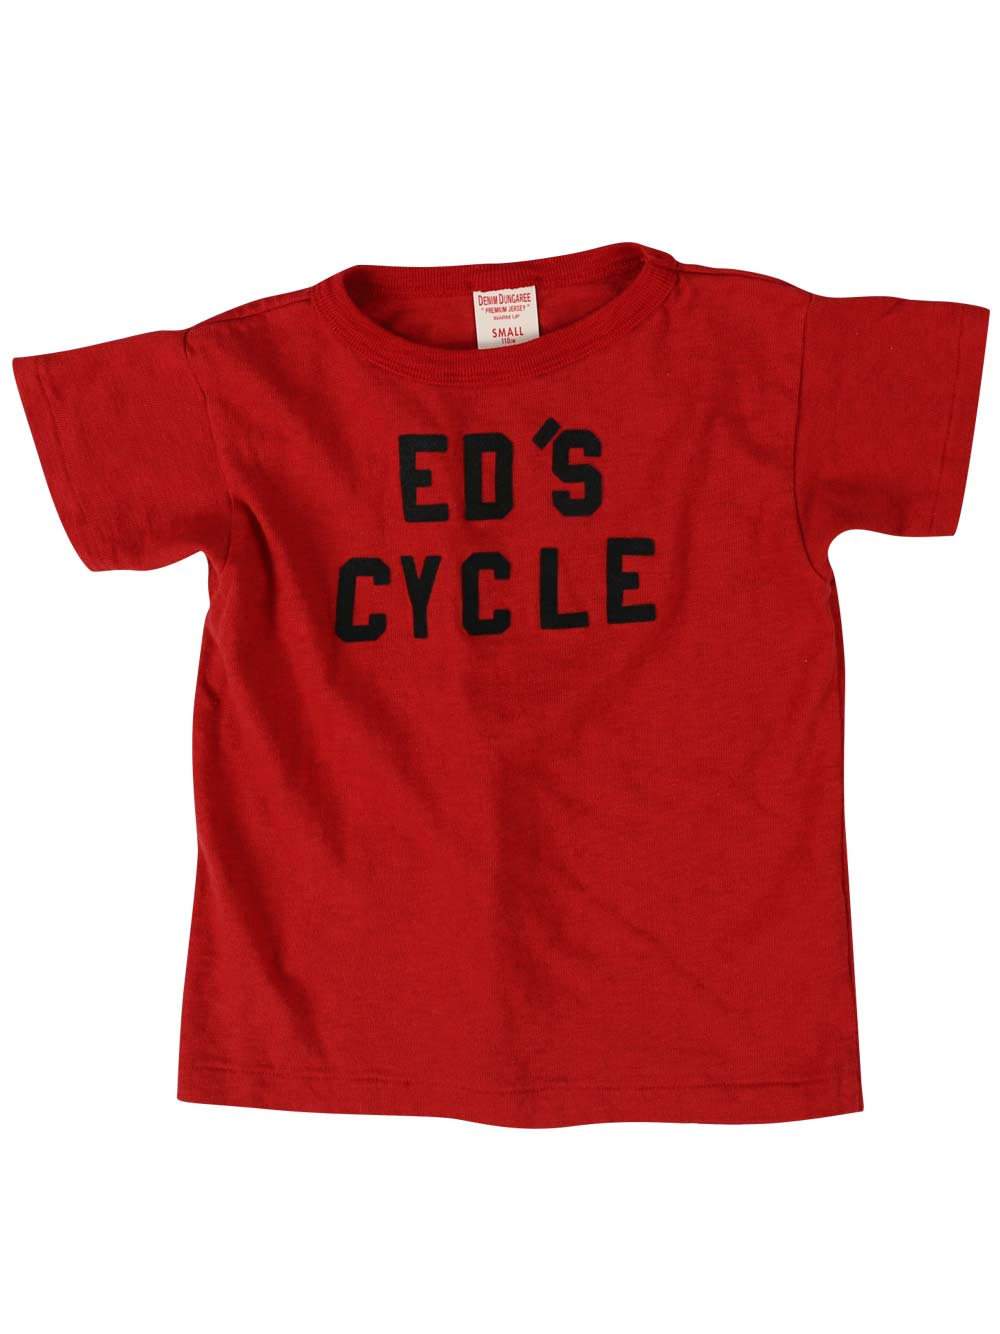 Ed's Cycle T-Shirt